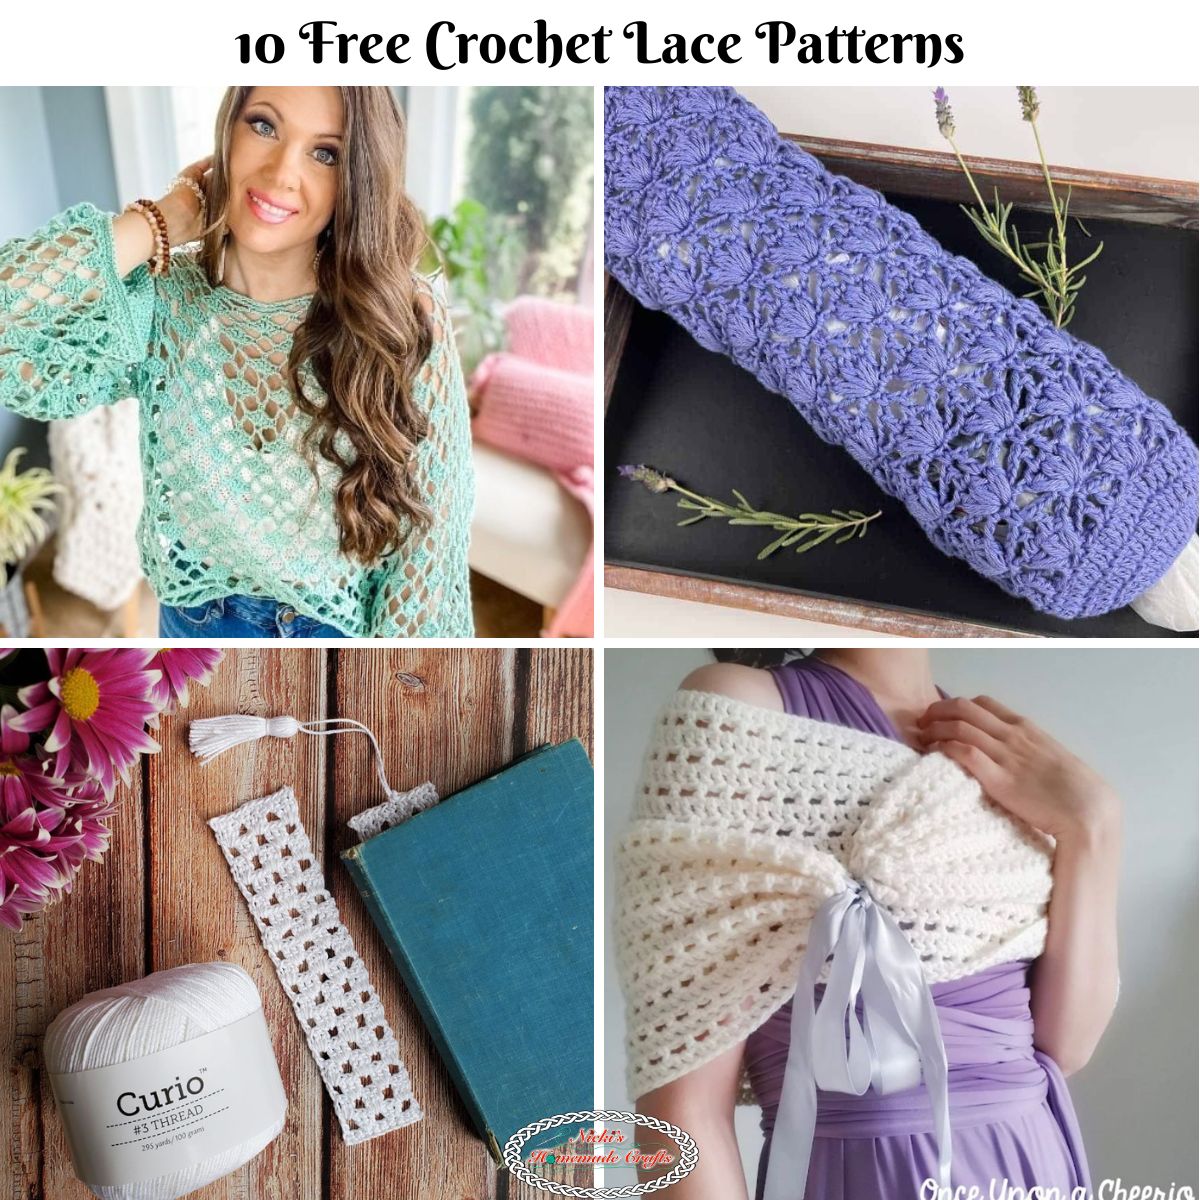 10 Beautiful Free Crochet Lace Patterns - Nicki's Homemade Crafts